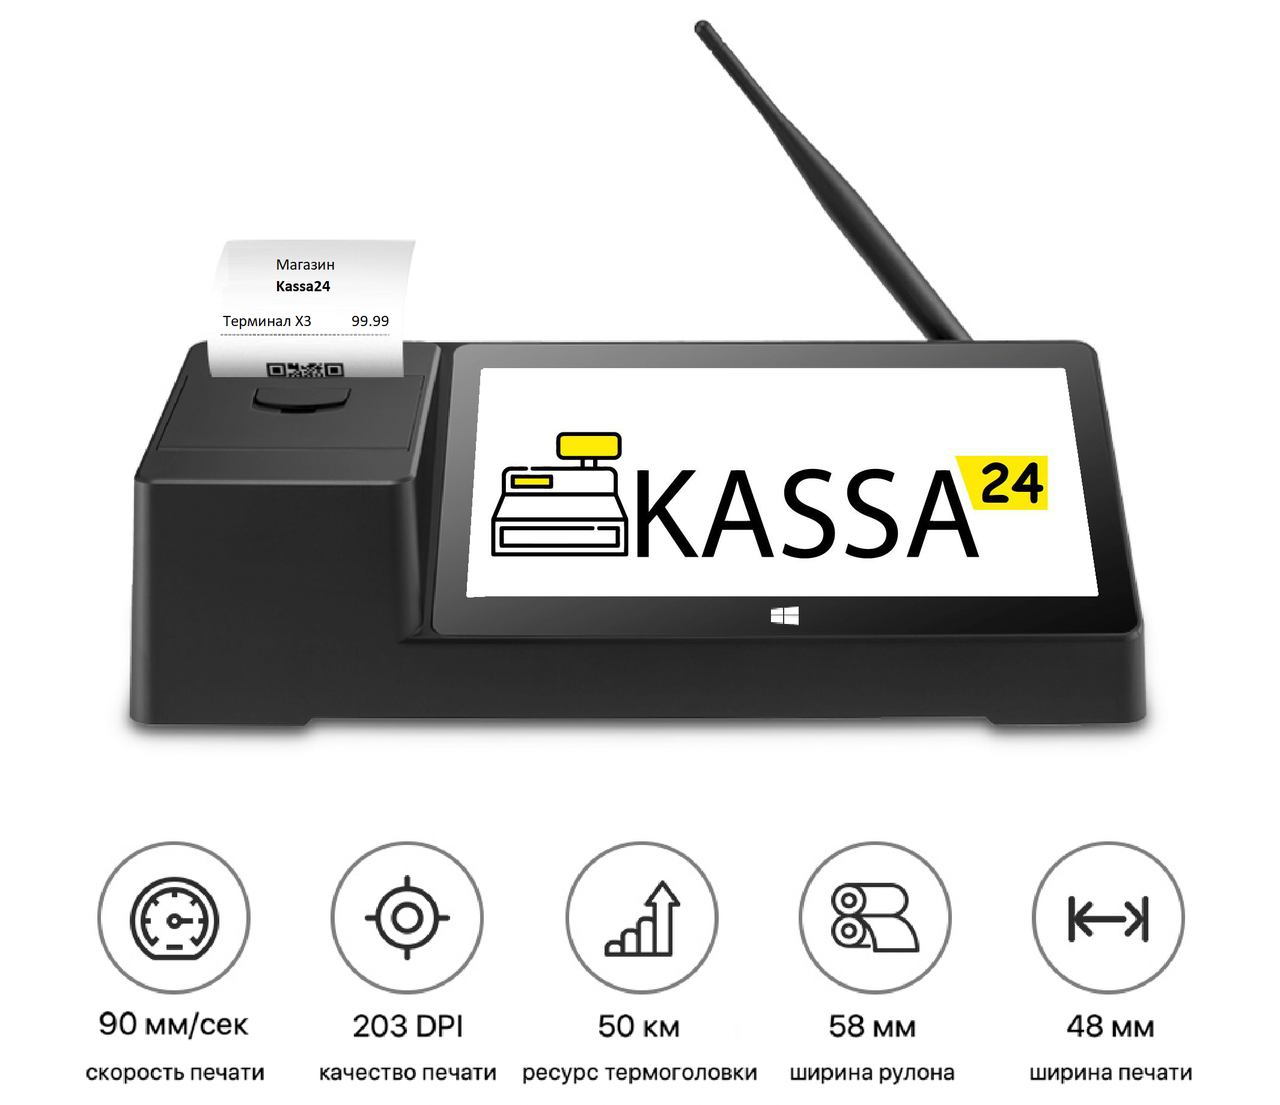 ✅ Комплекс для автоматизації торгівлі (магазини, бутіки, острівці) програма Kassa24 + POS термінал + сканер